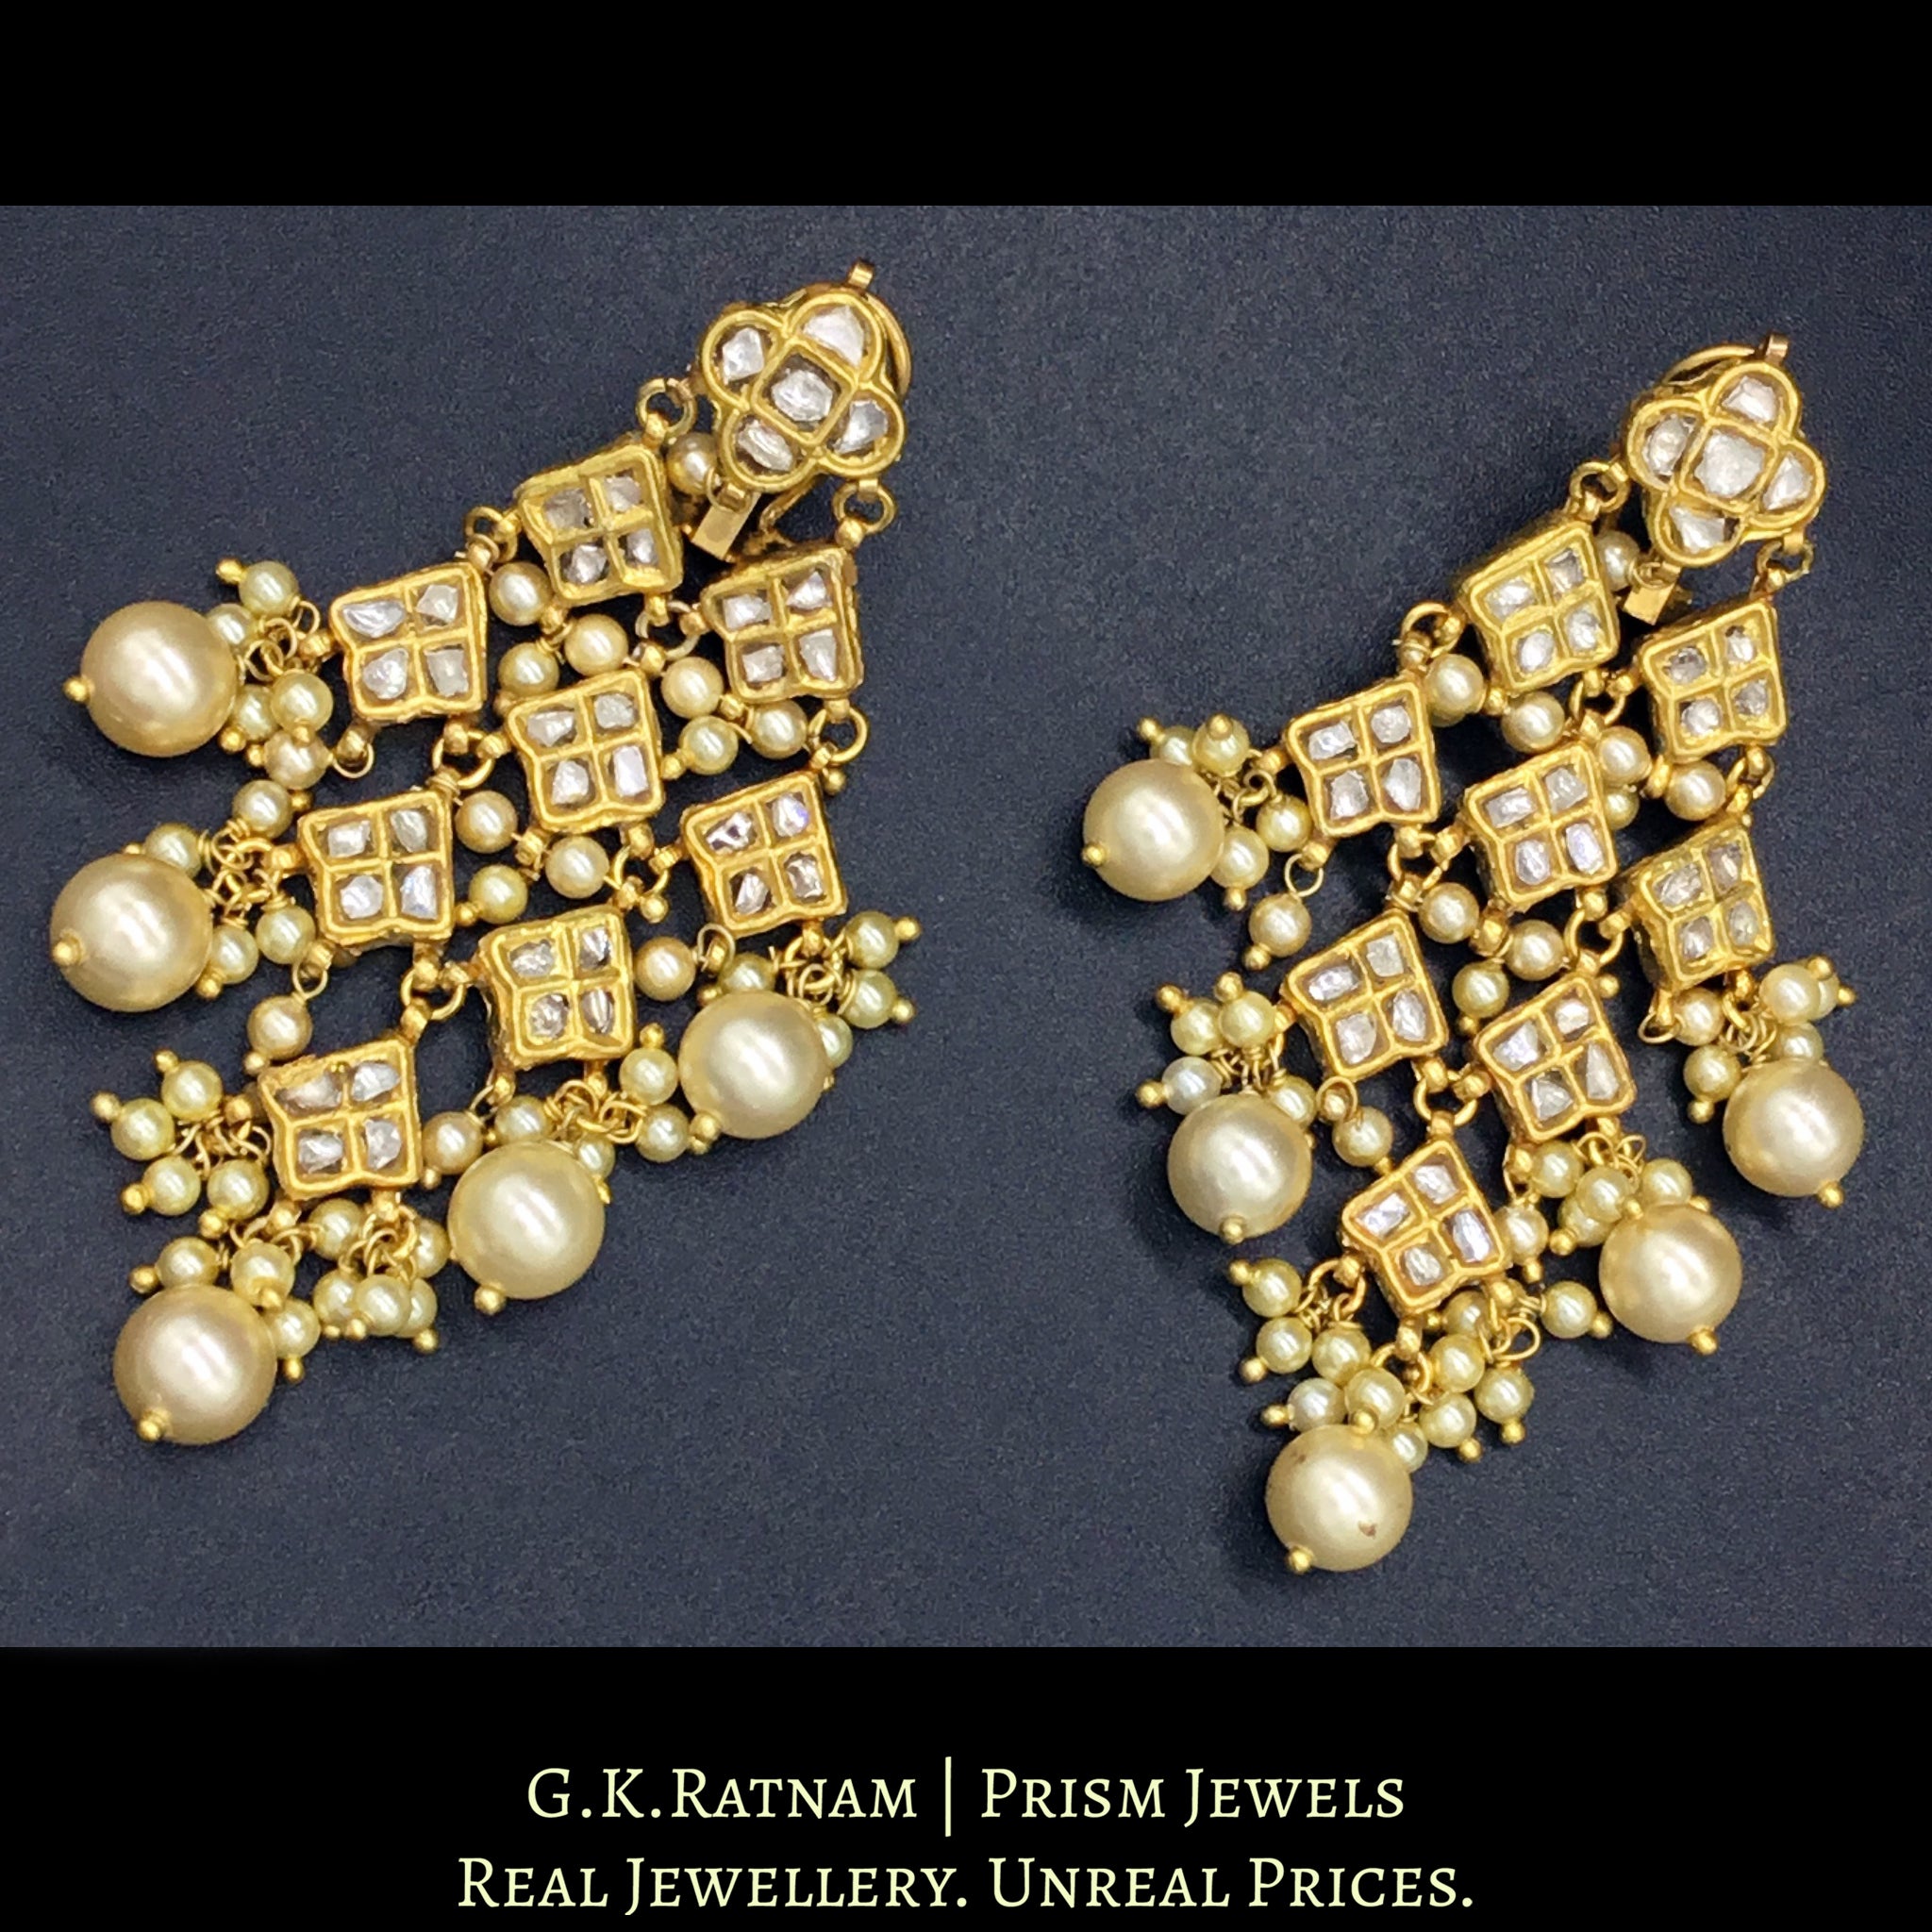 23k Gold and Diamond Polki kite-shaped Chandelier Earring Pair